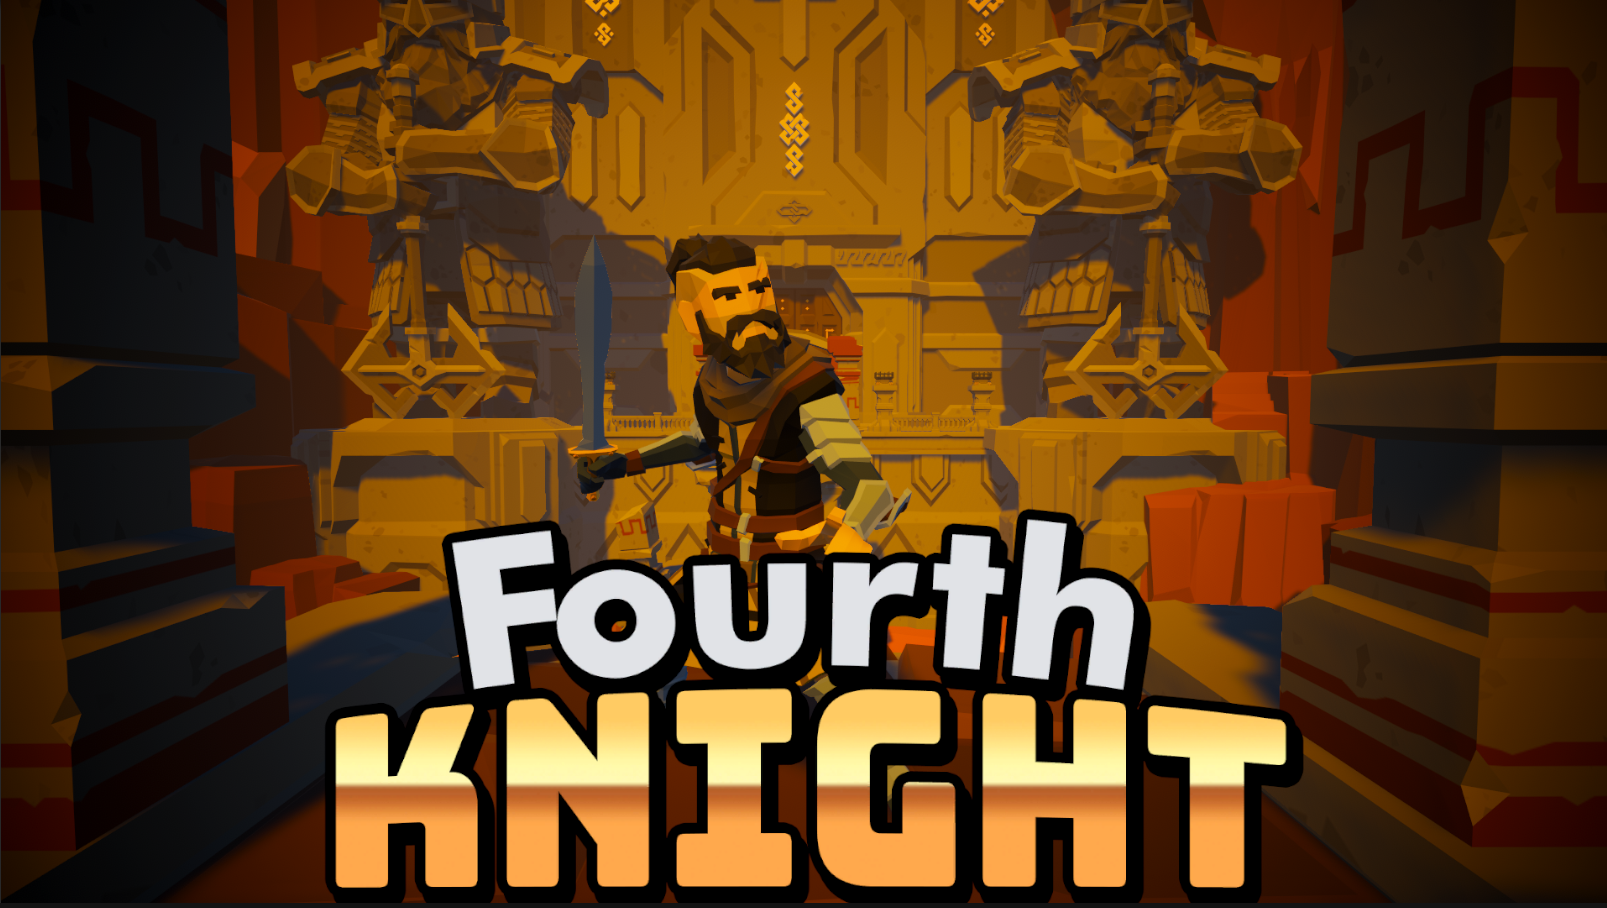 Fourth knight